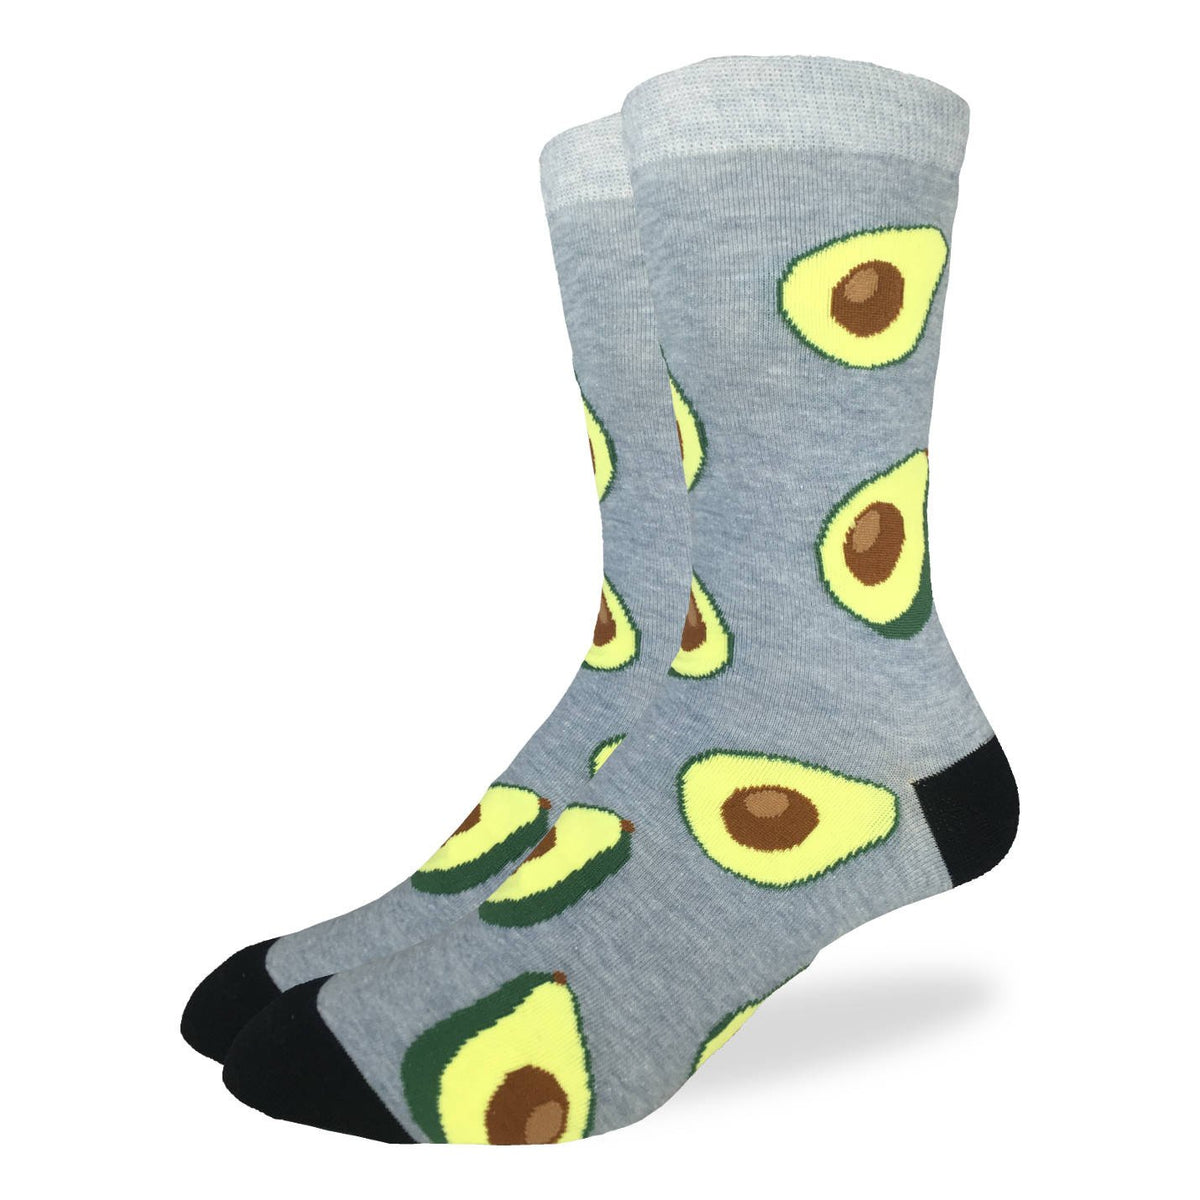 Men's Avocado Socks – Good Luck Sock